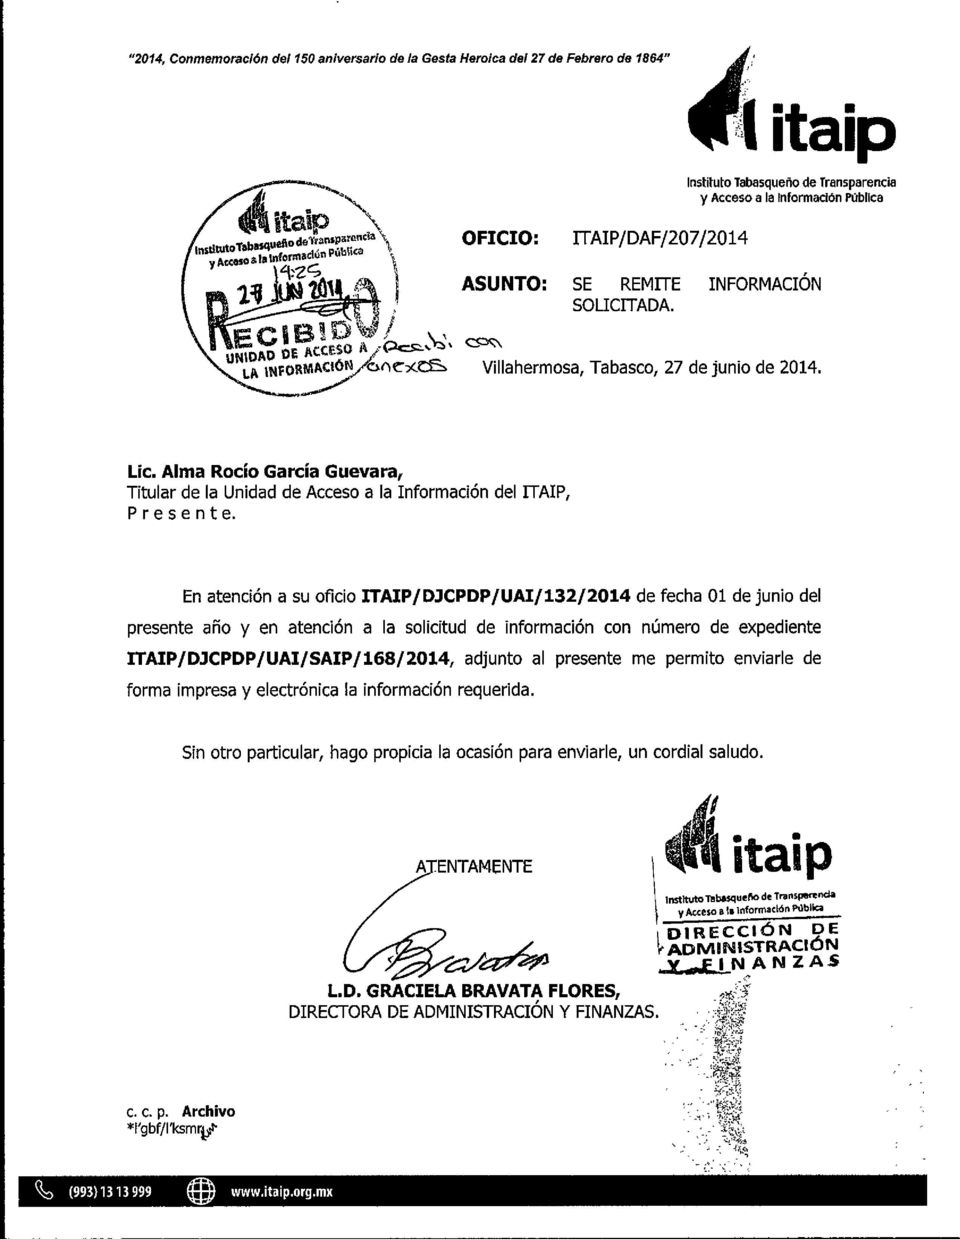 ^CIB4 \ UNIDAD DE ACUSSO A/ C5:Y'z\ Villahermosa, Tabasco, 27 de junio de 2014. Lic. Alma Rocío García Guevara, Titular de la Unidad de Acceso a la Información del ITAIP, Presente.